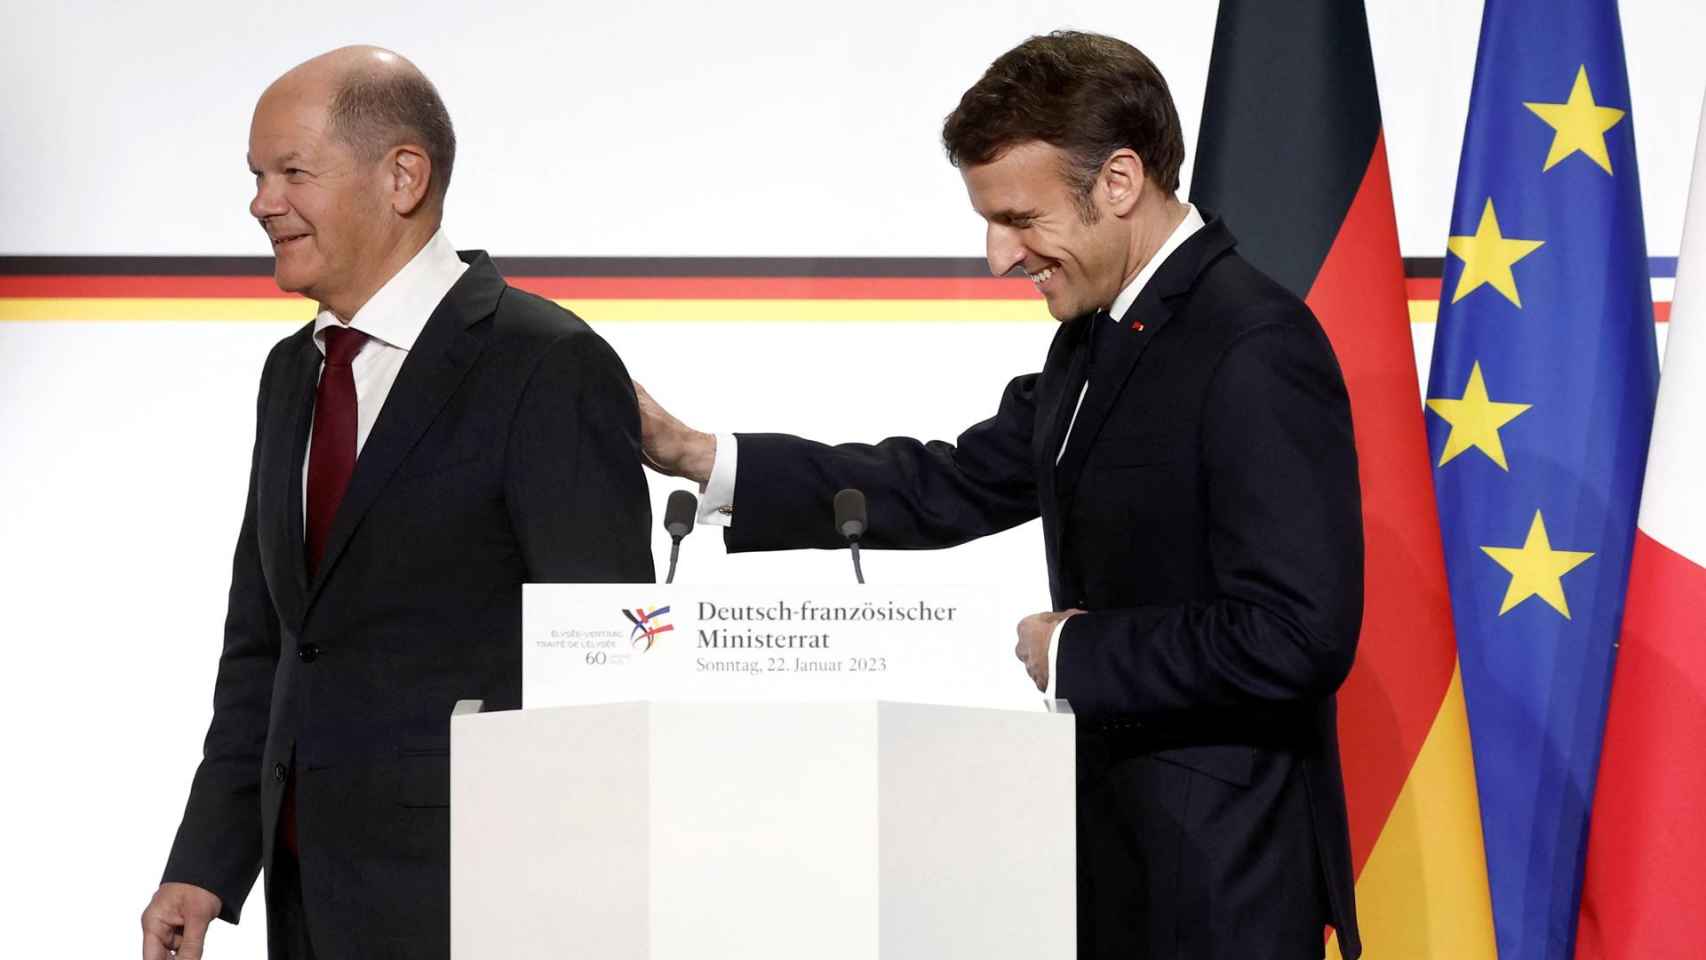 Olaf Scholz, canciller alemán, y Emmanuel Macron, presidente de Francia, durante la rueda de prensa posterior a su reunión de este domingo en el Palacio del Elíseo.